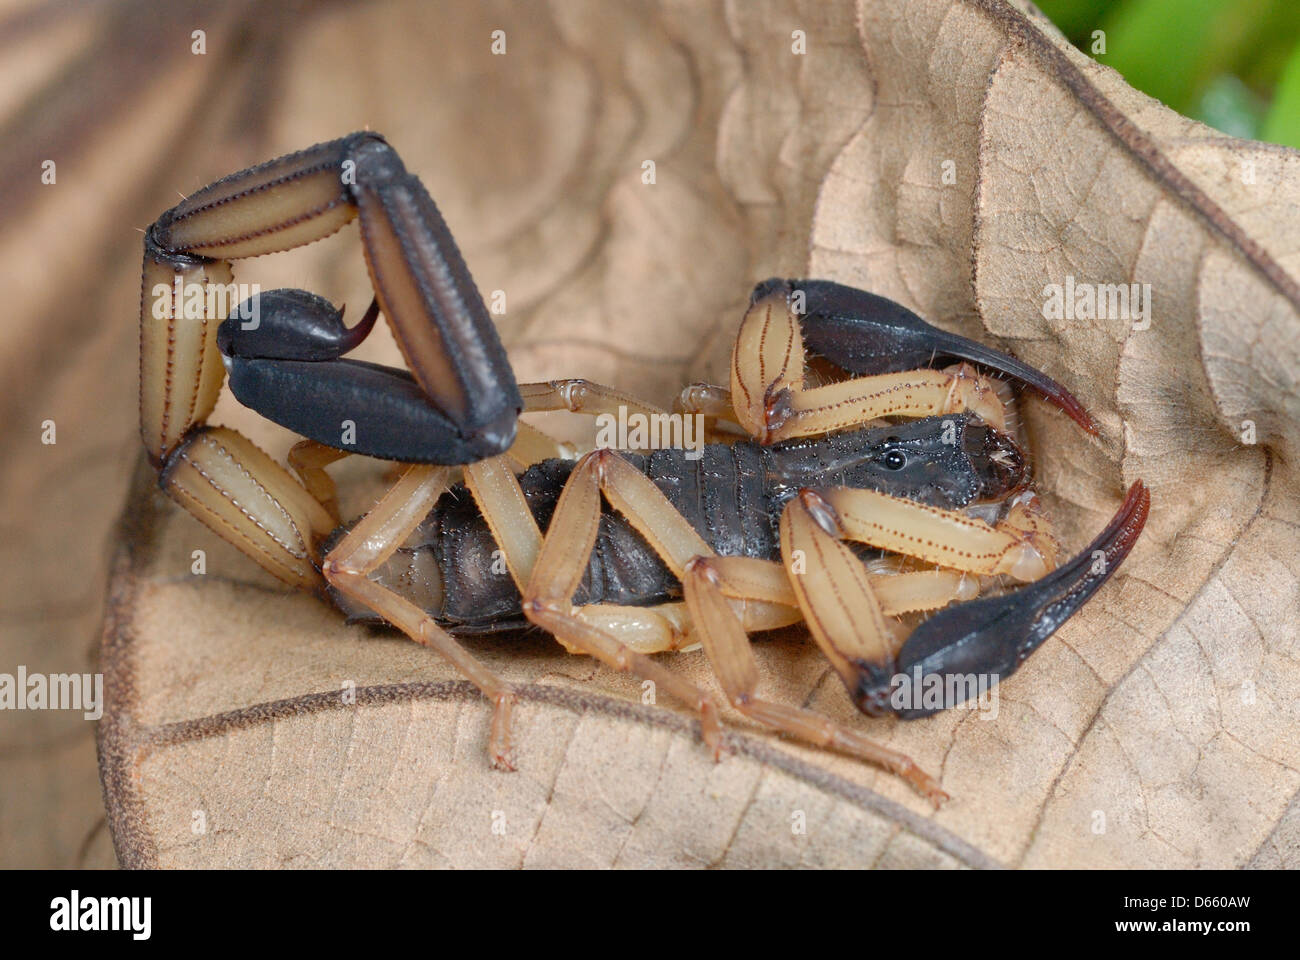 Corteccia Scorpion (Centruroides bicolore) in Costa Rica foresta pluviale Foto Stock